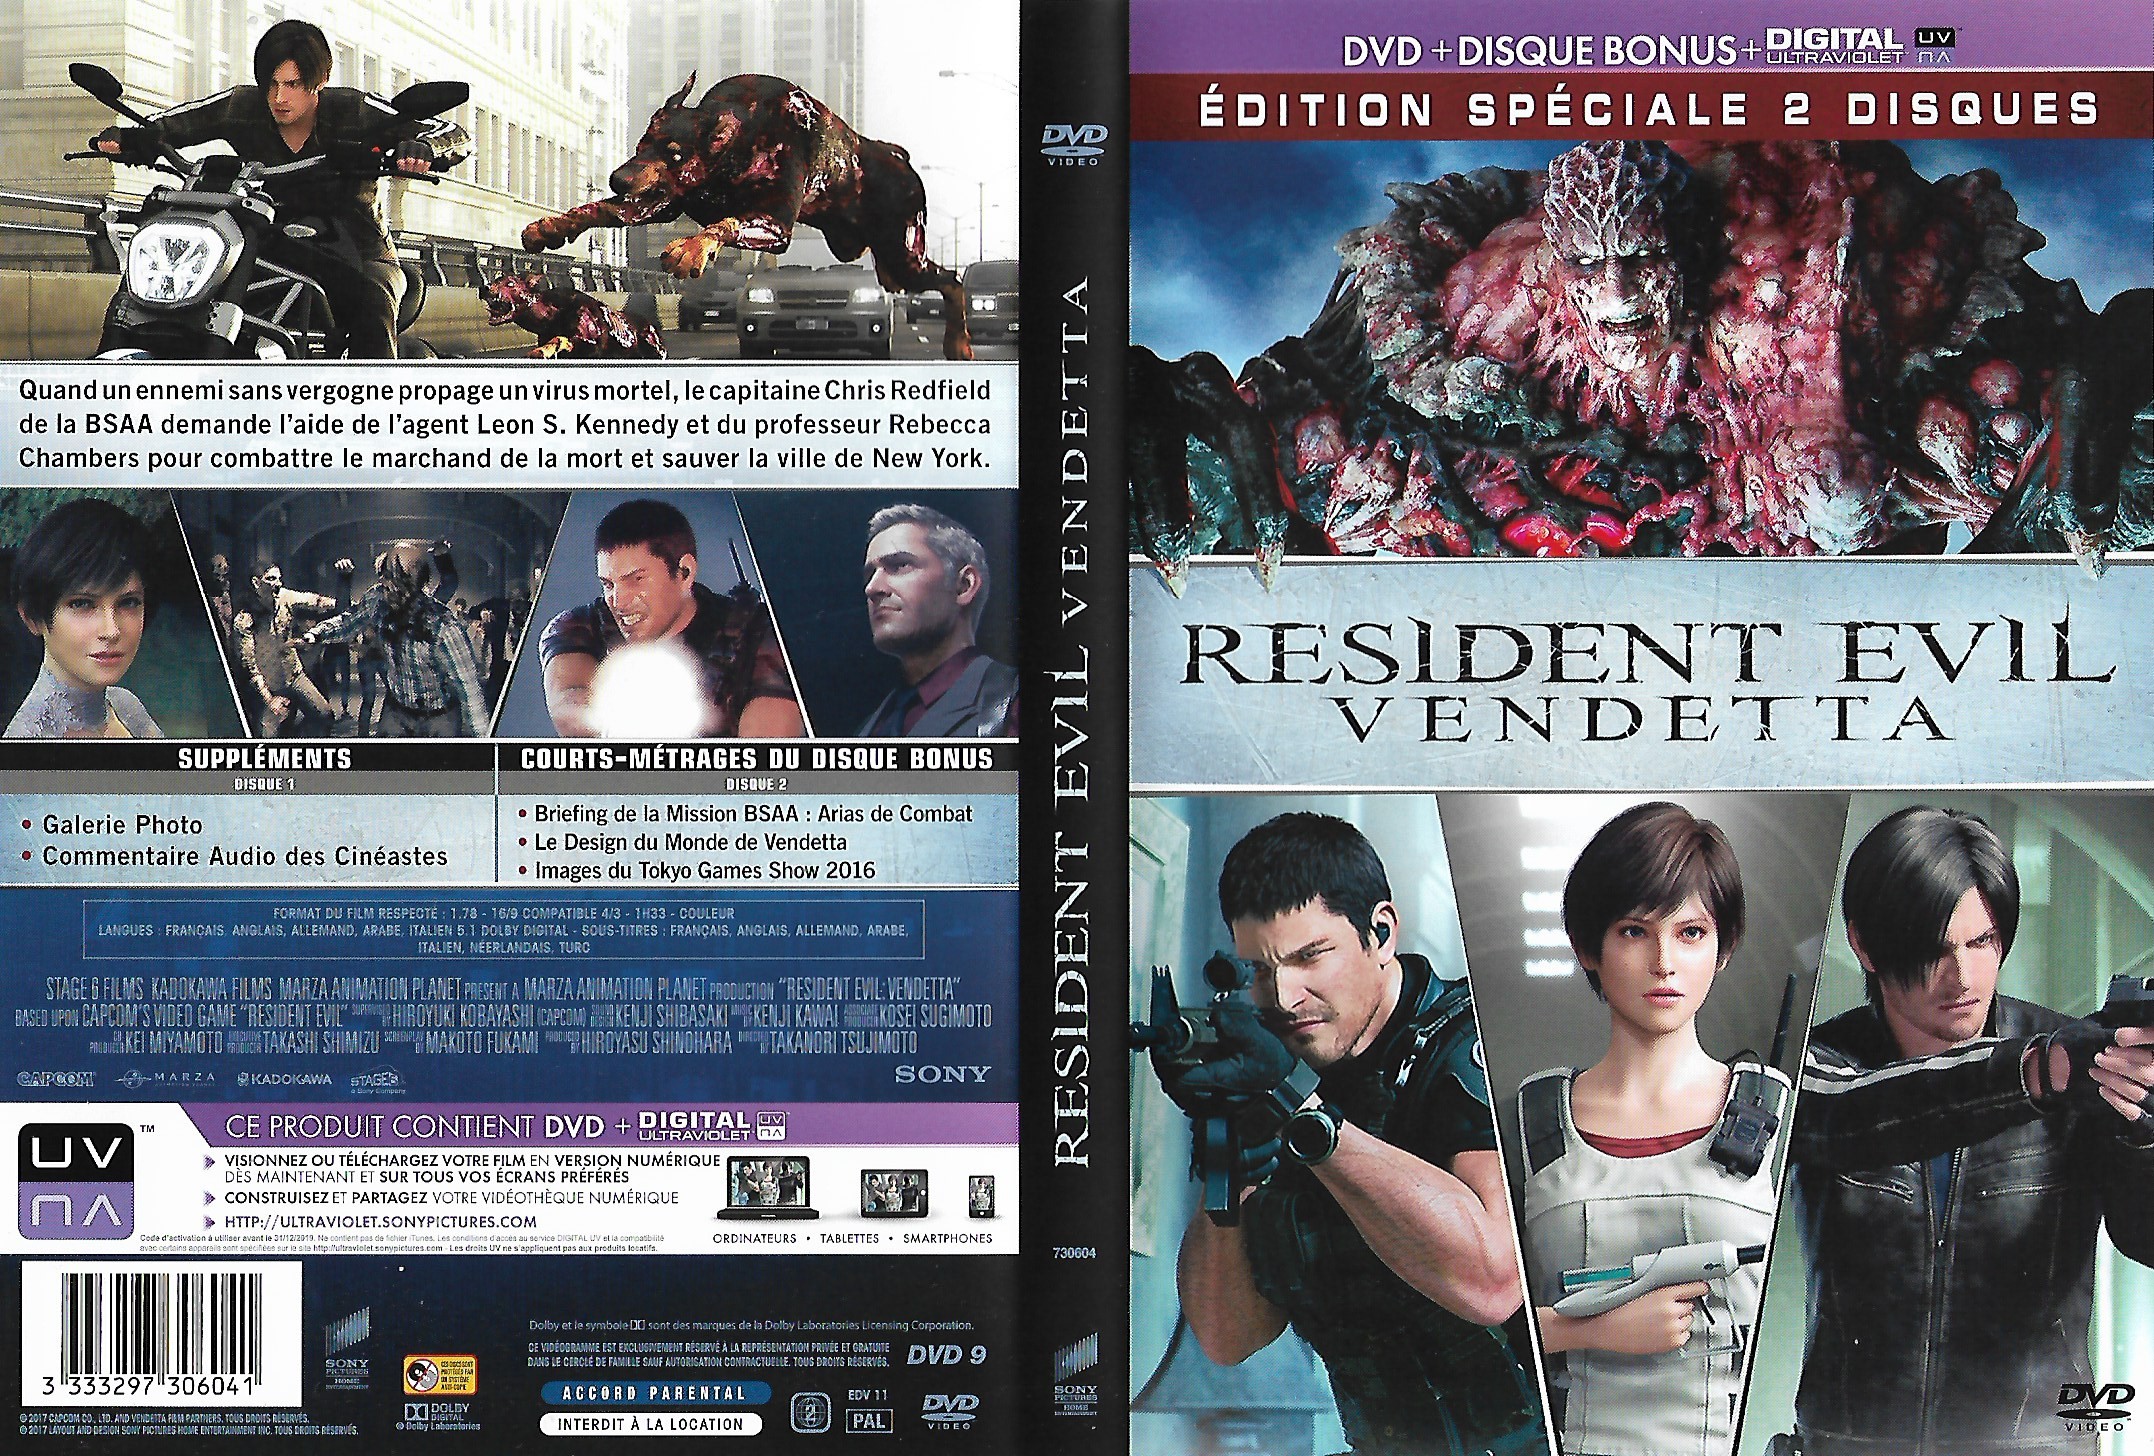 Jaquette DVD Resident evil vendetta